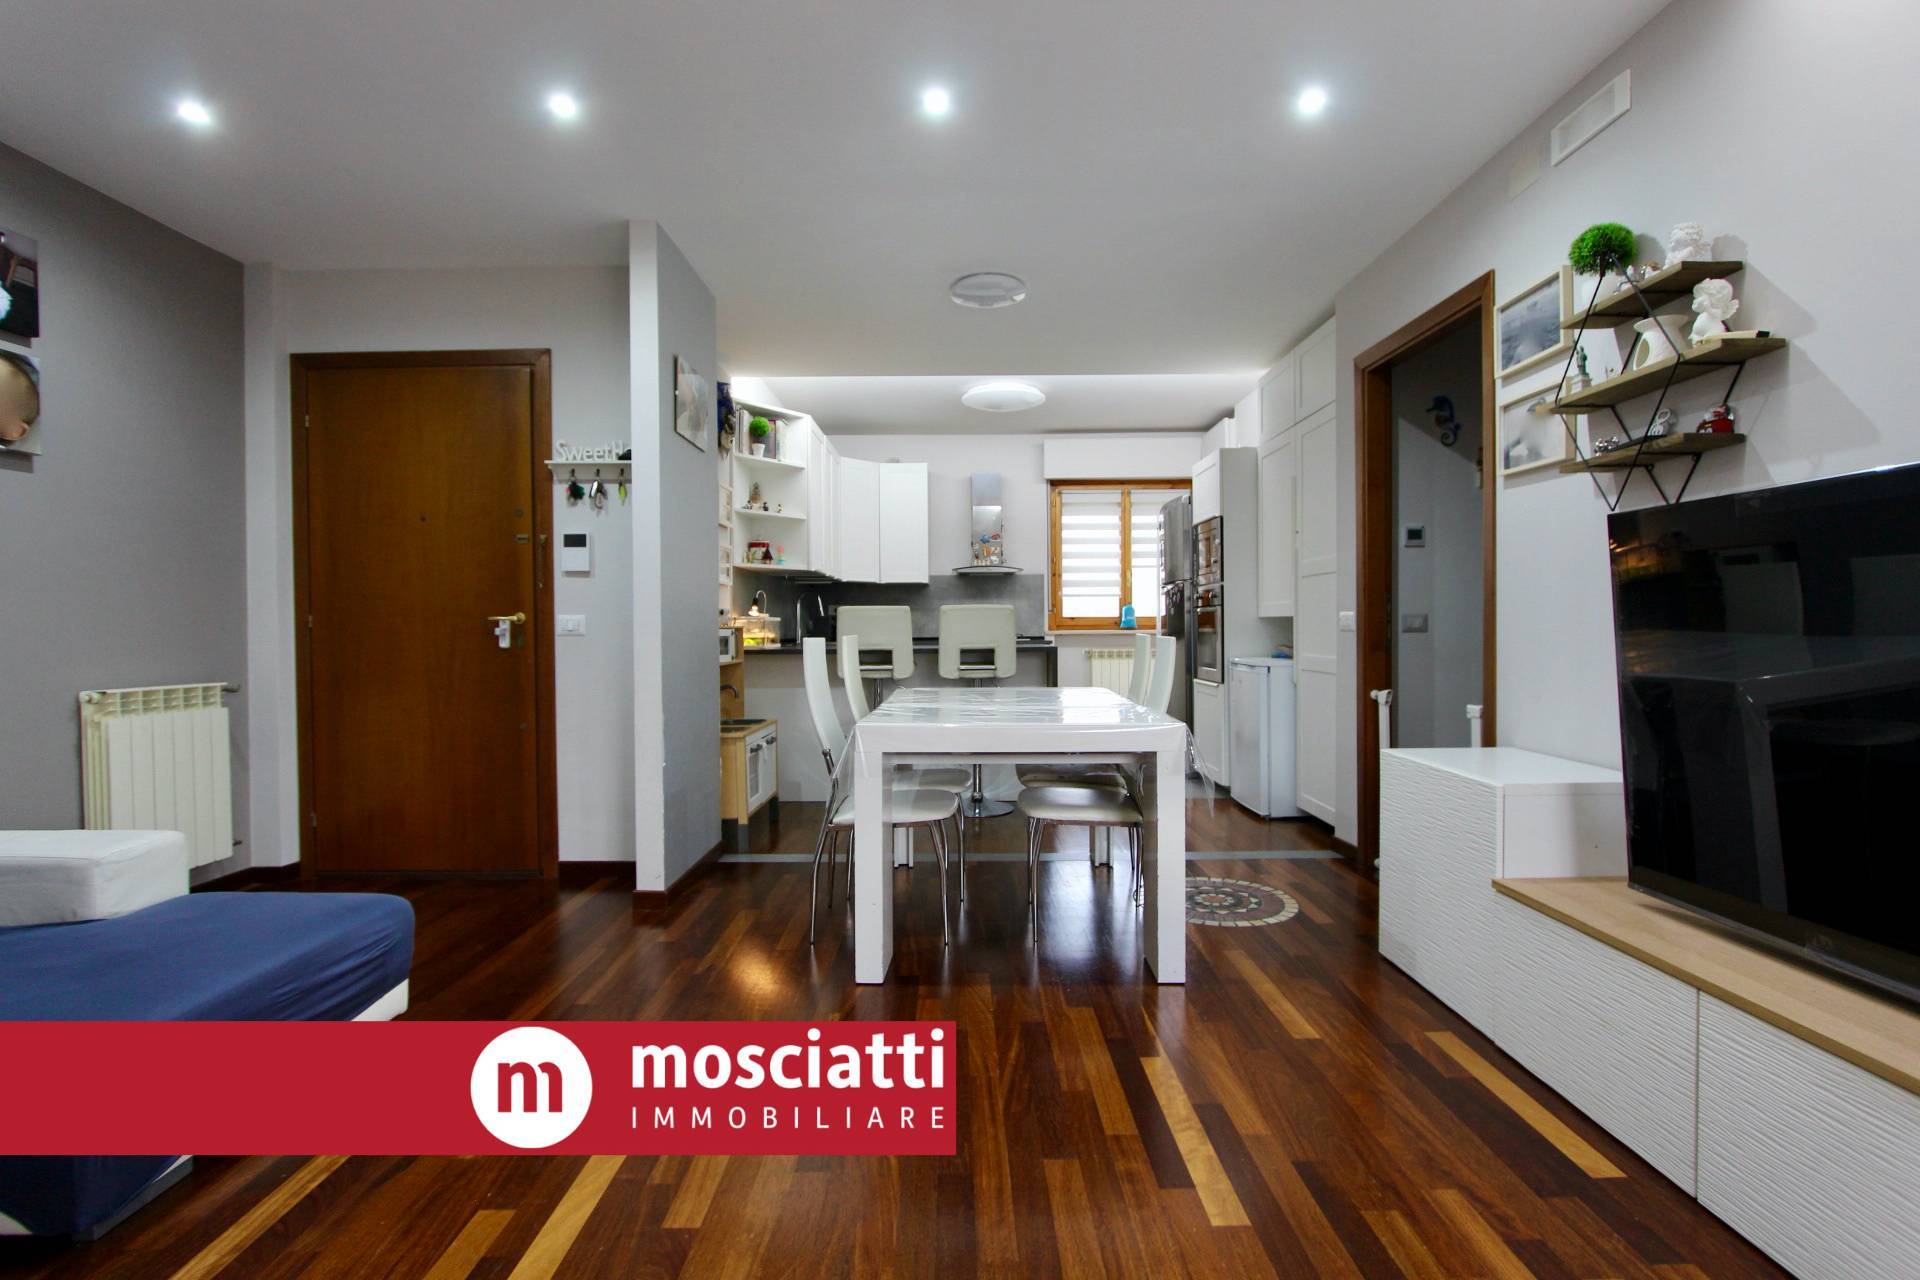 Appartamento in vendita a Castelraimondo, 2 locali, prezzo € 120.000 | PortaleAgenzieImmobiliari.it